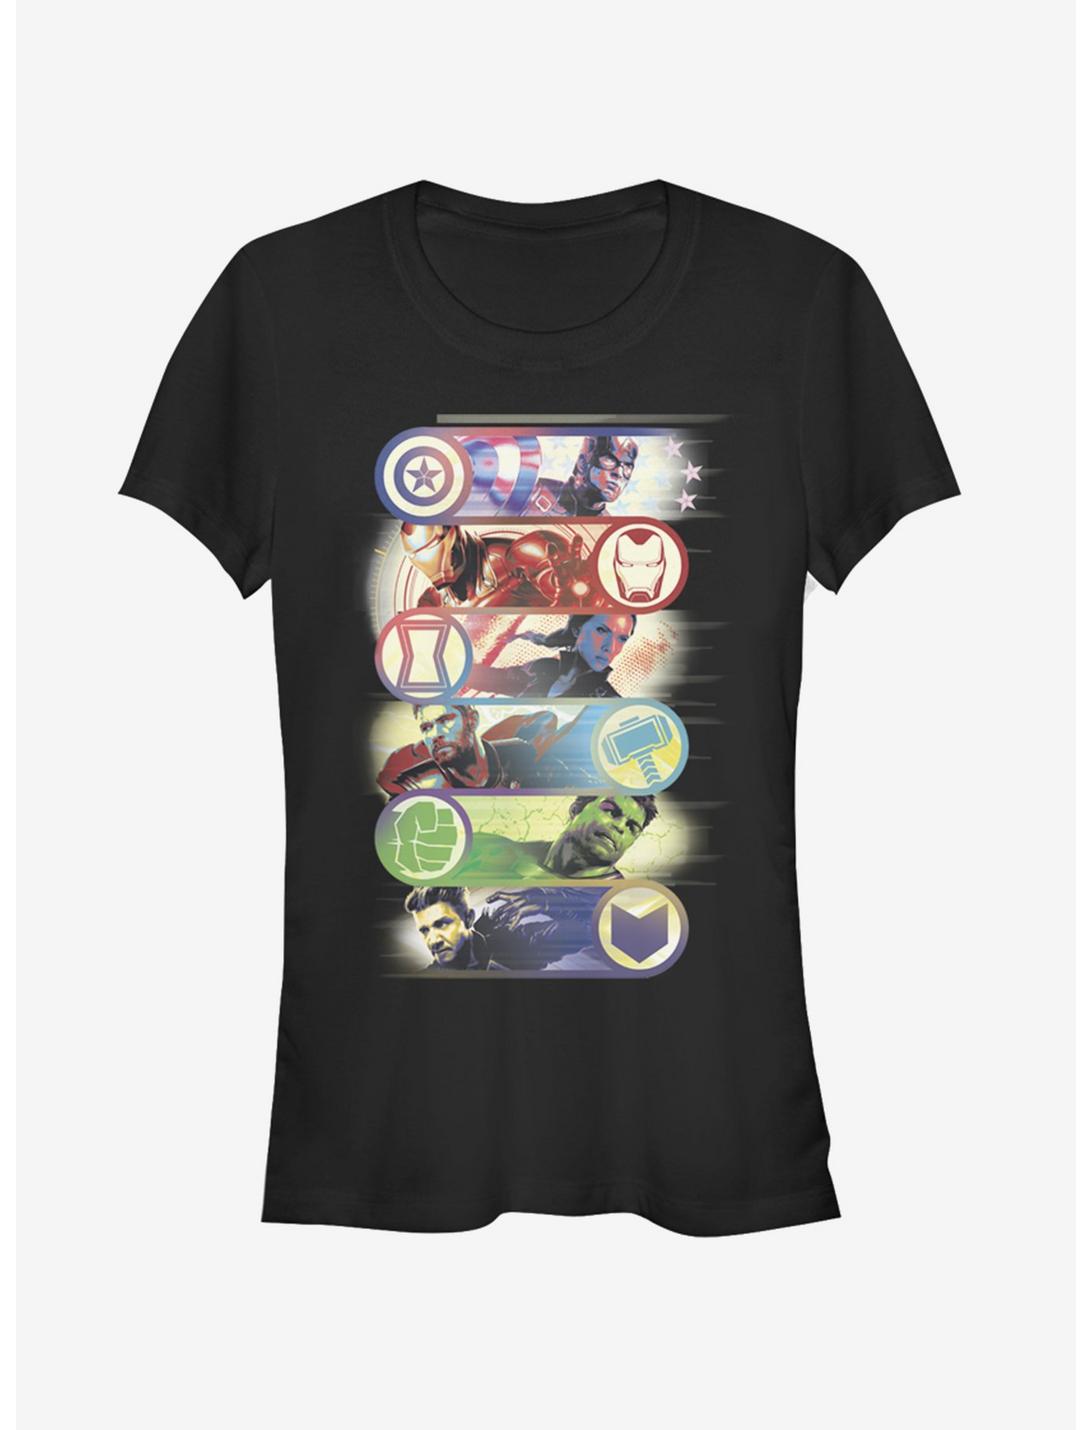 Marvel Avengers: Endgame Avengers Group Badge Girls T-Shirt, BLACK, hi-res